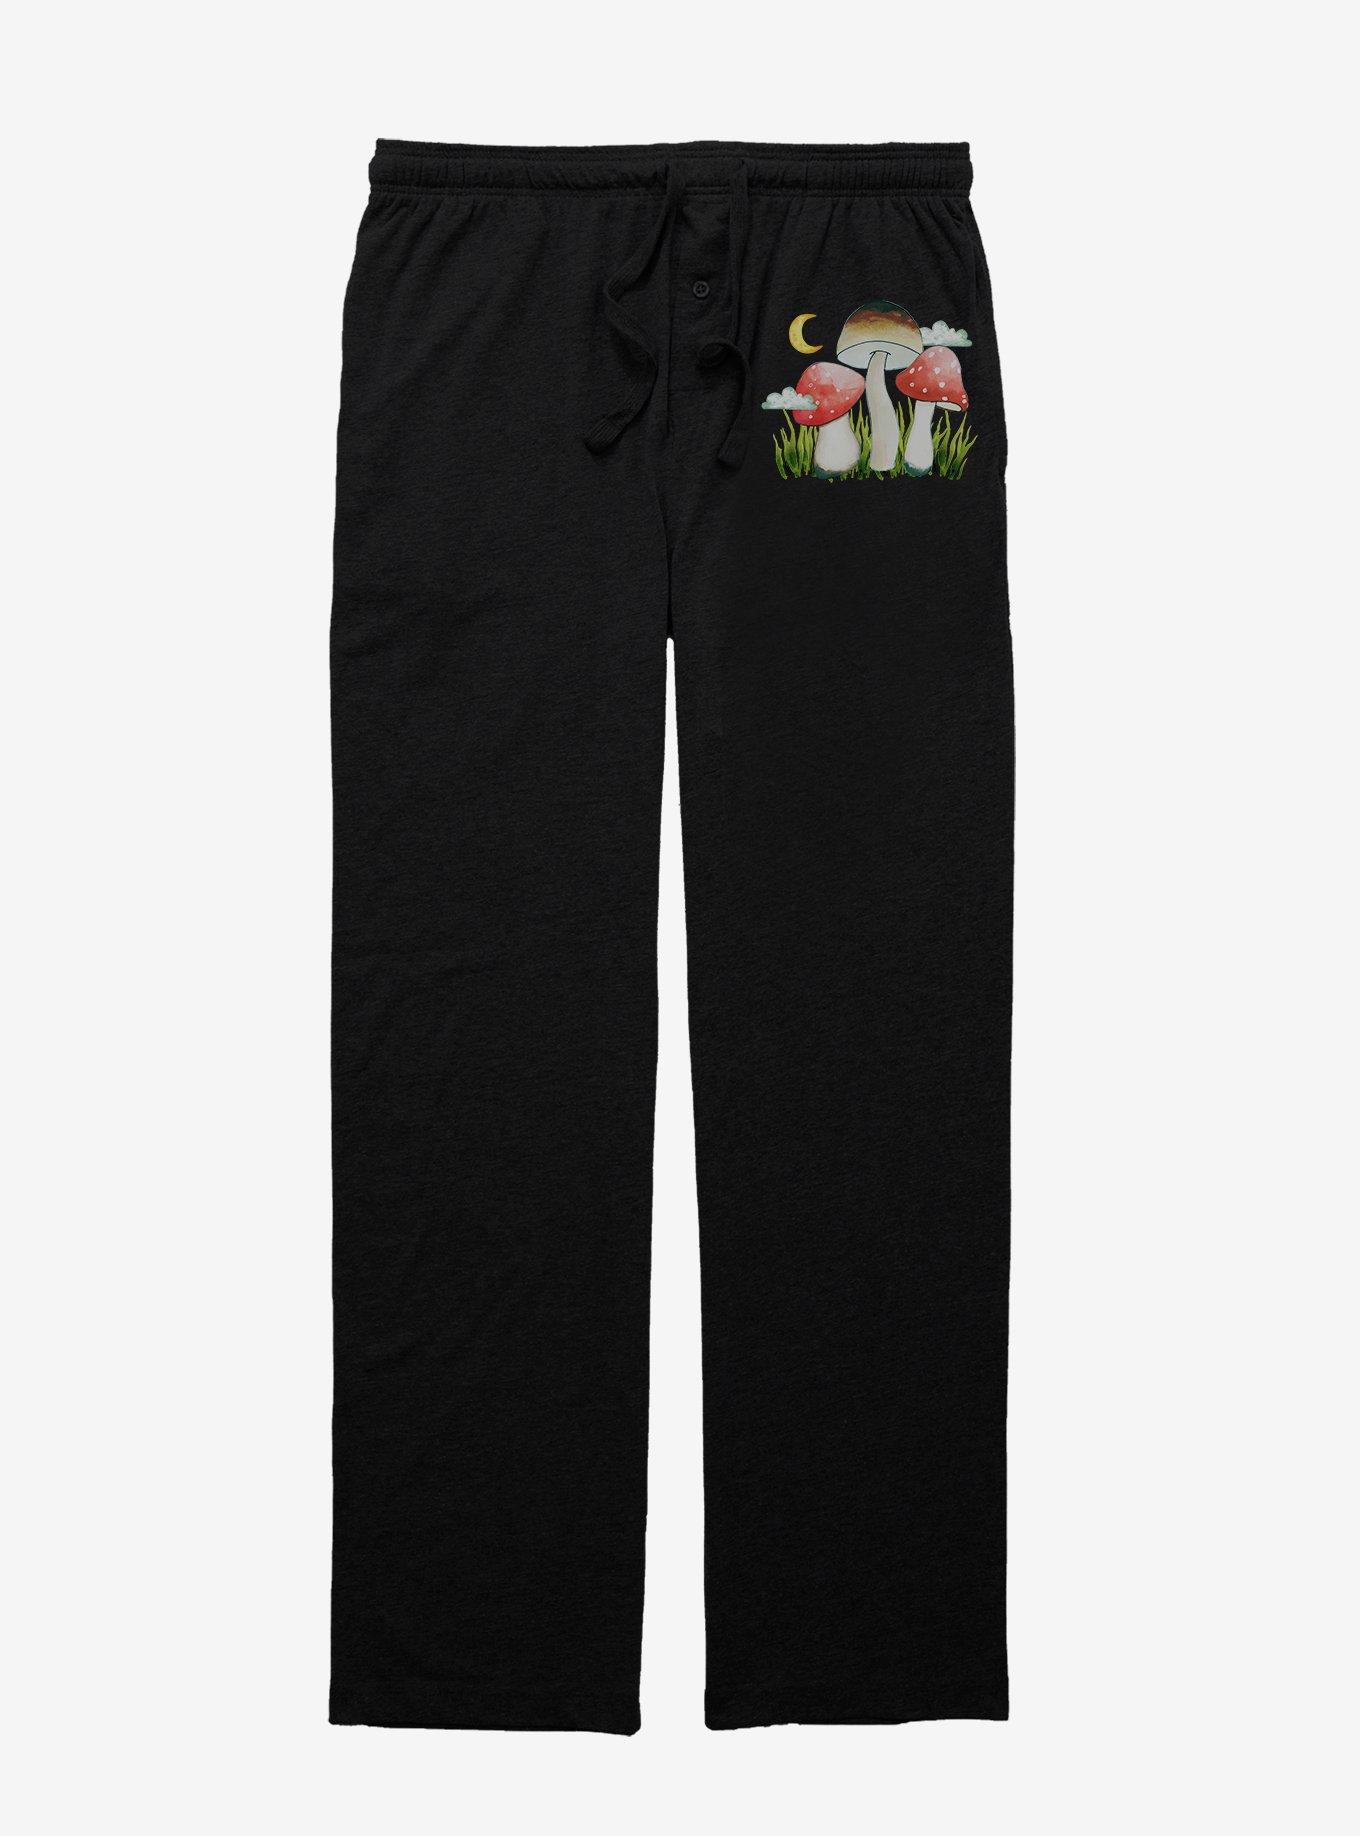 Wonderland Fungi Pajama Pants, BLACK, hi-res